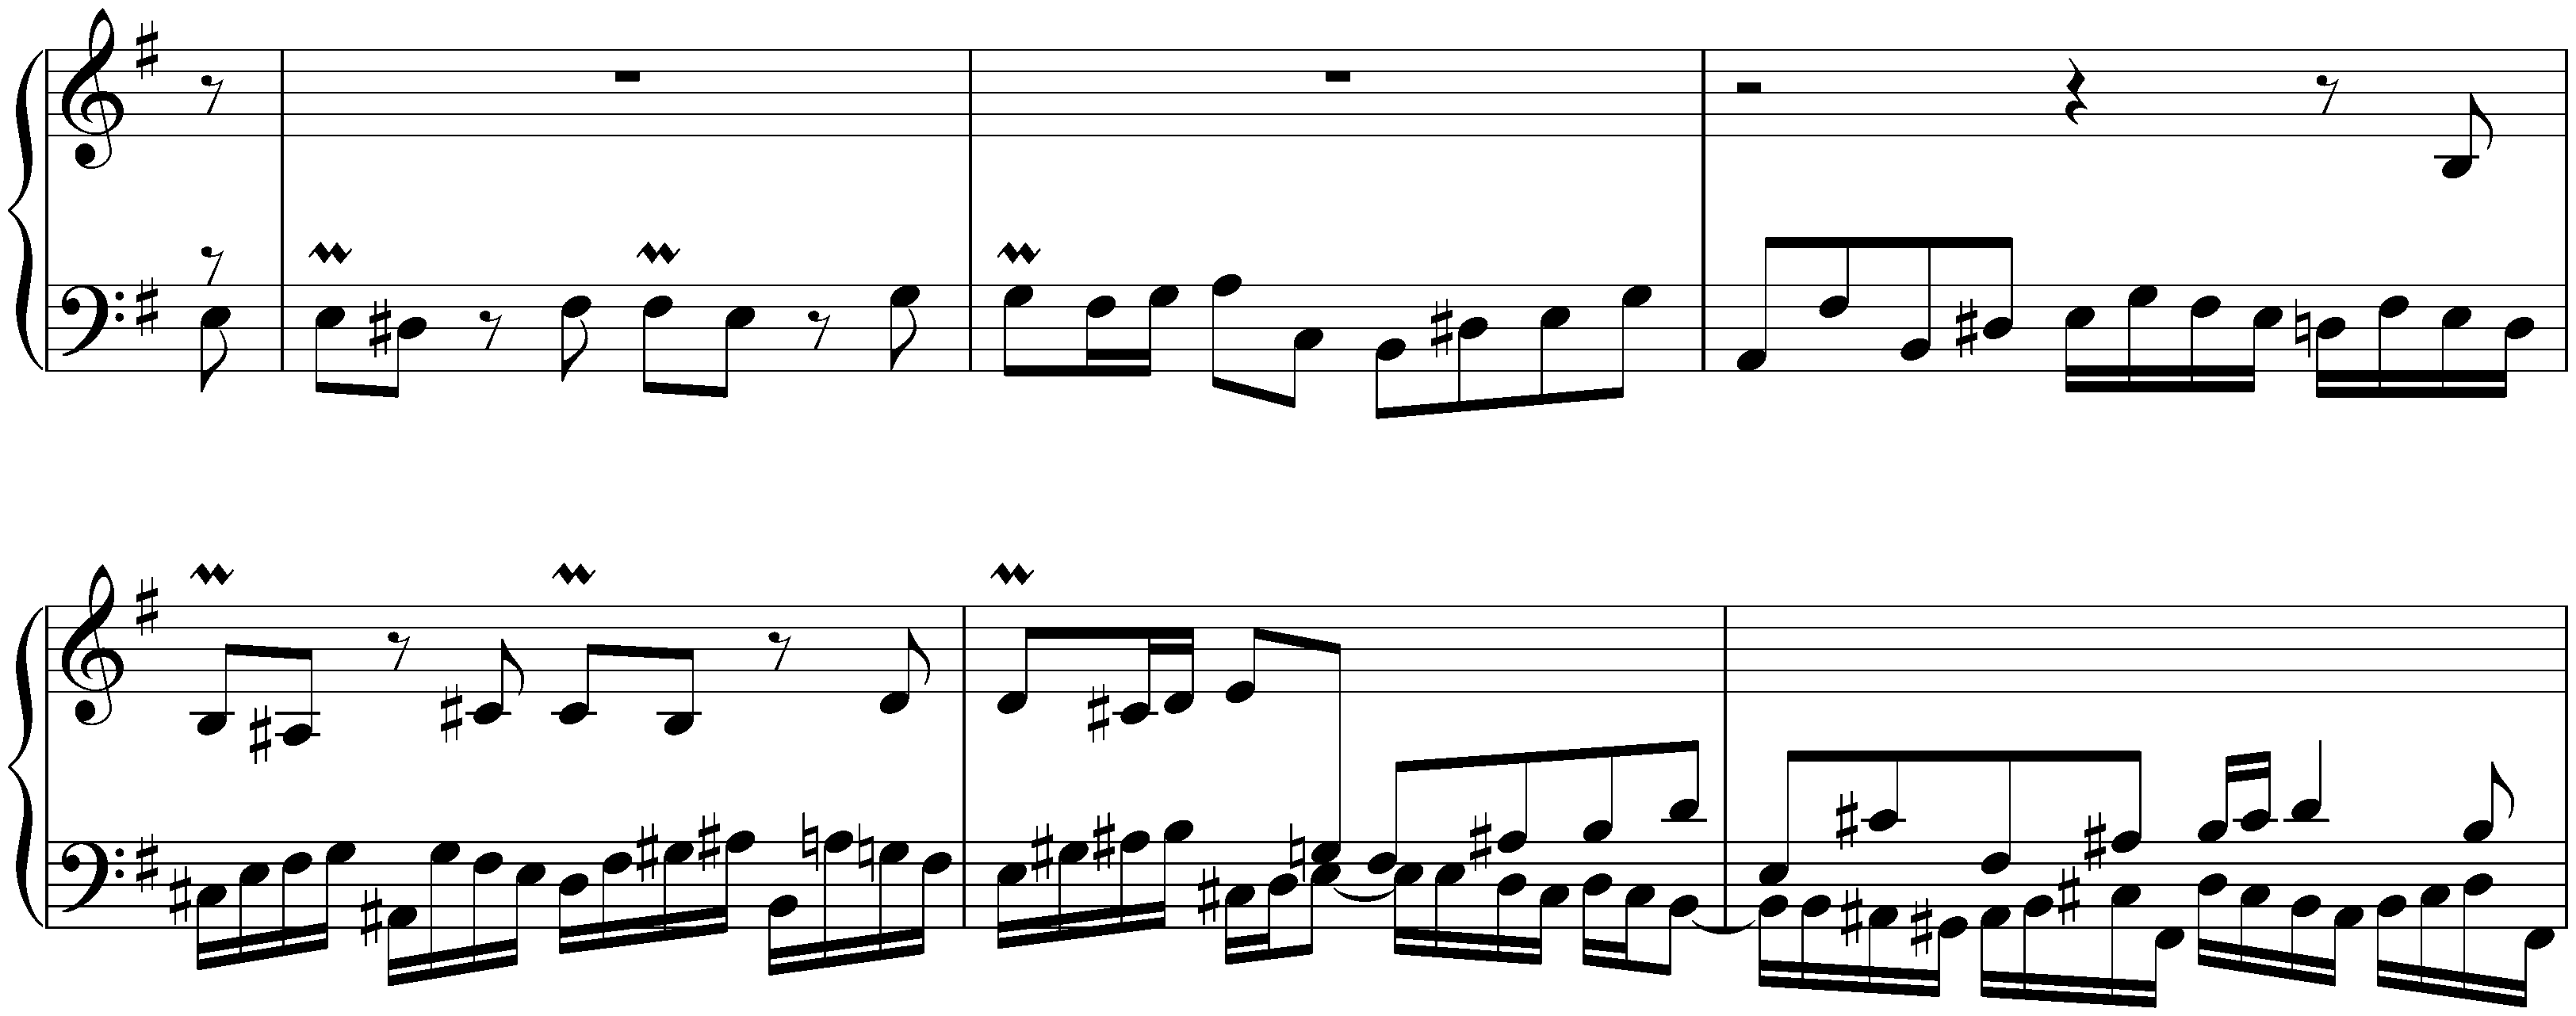 Partita no. 6 in E minor, BWV 830; 1. Toccata